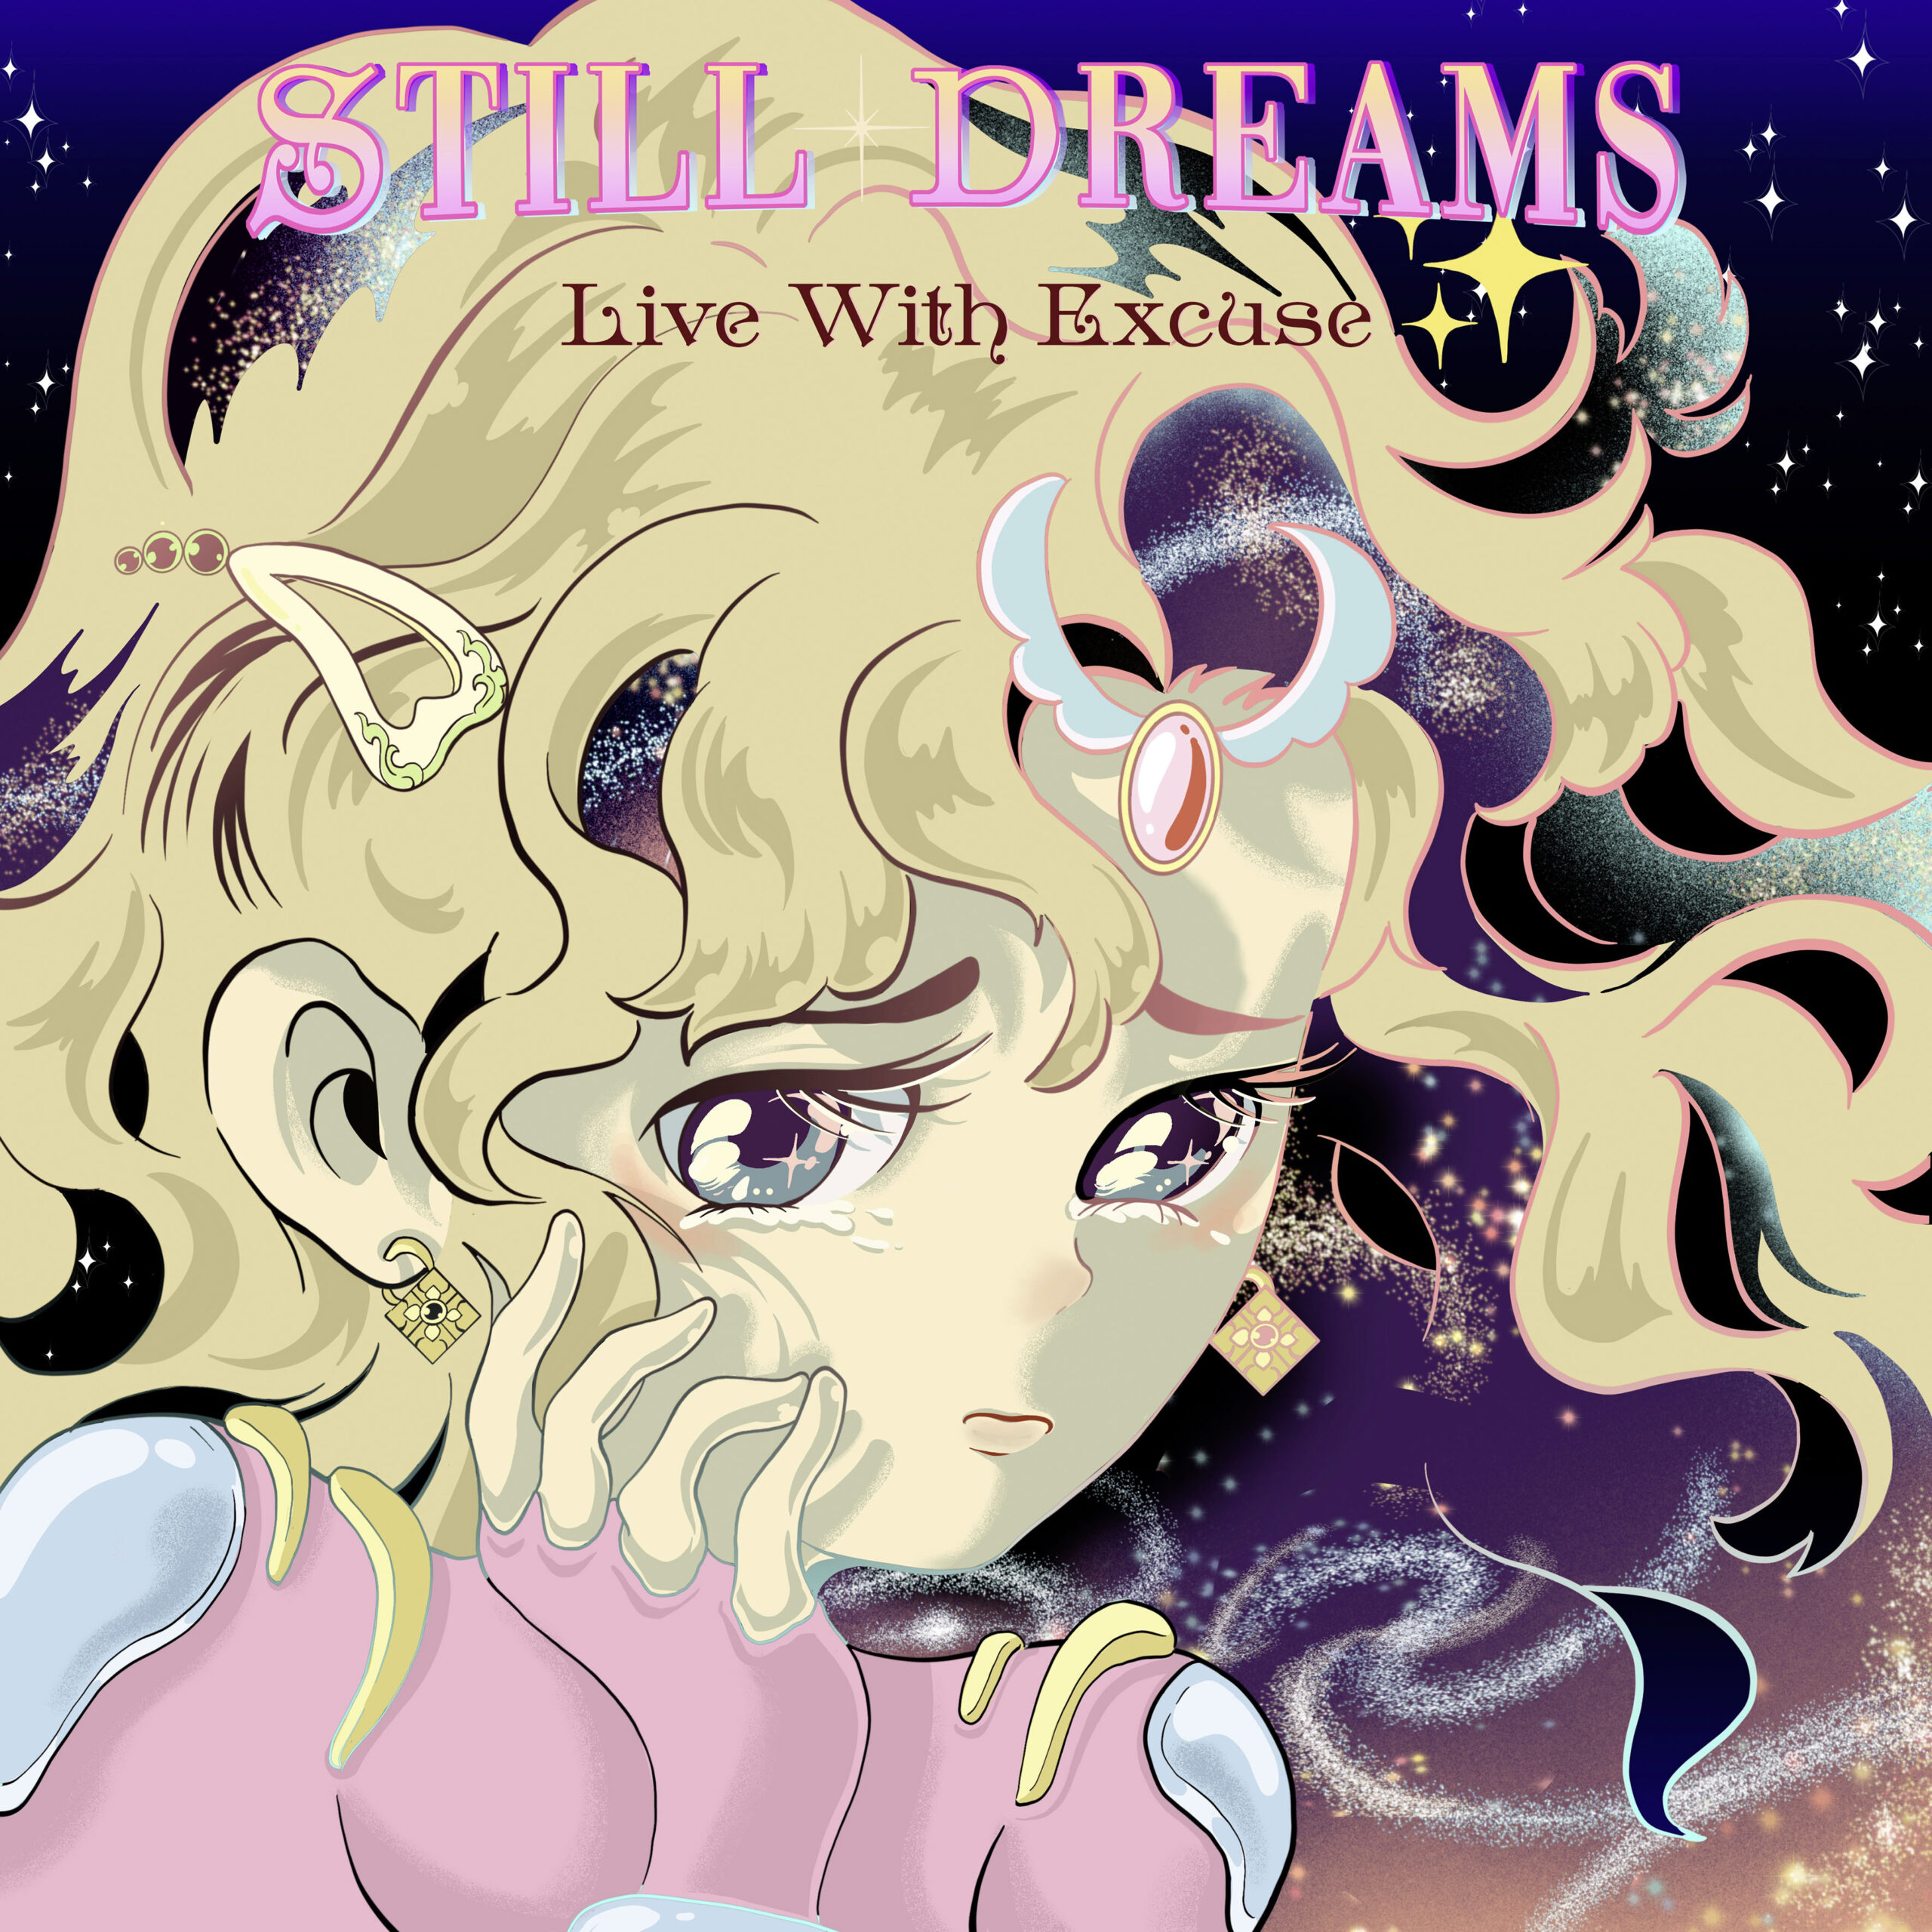  Desde Japón  “Live With Excuse” de STILL DREAMS